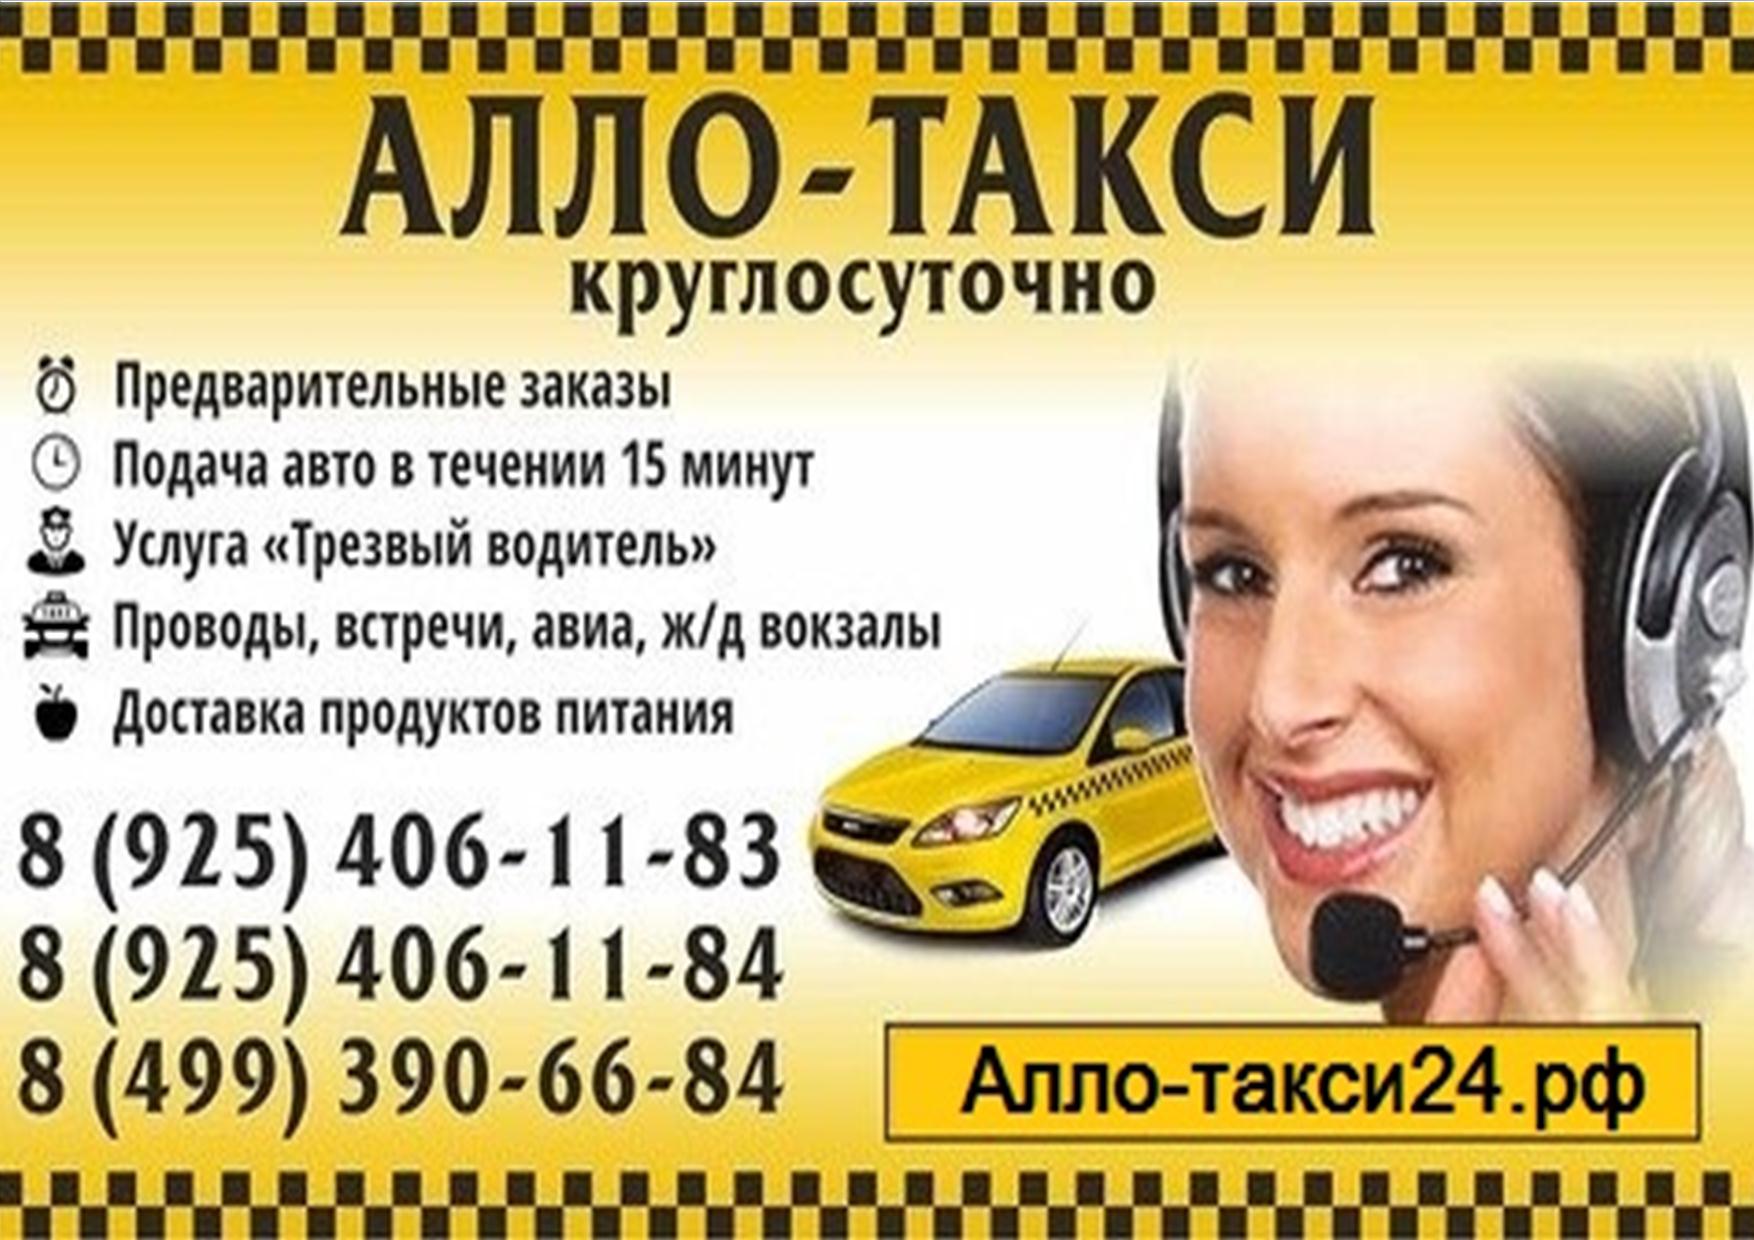 Просто такси телефон. Реклама такси. Объявление такси. Визитка такси. Таксист реклама.